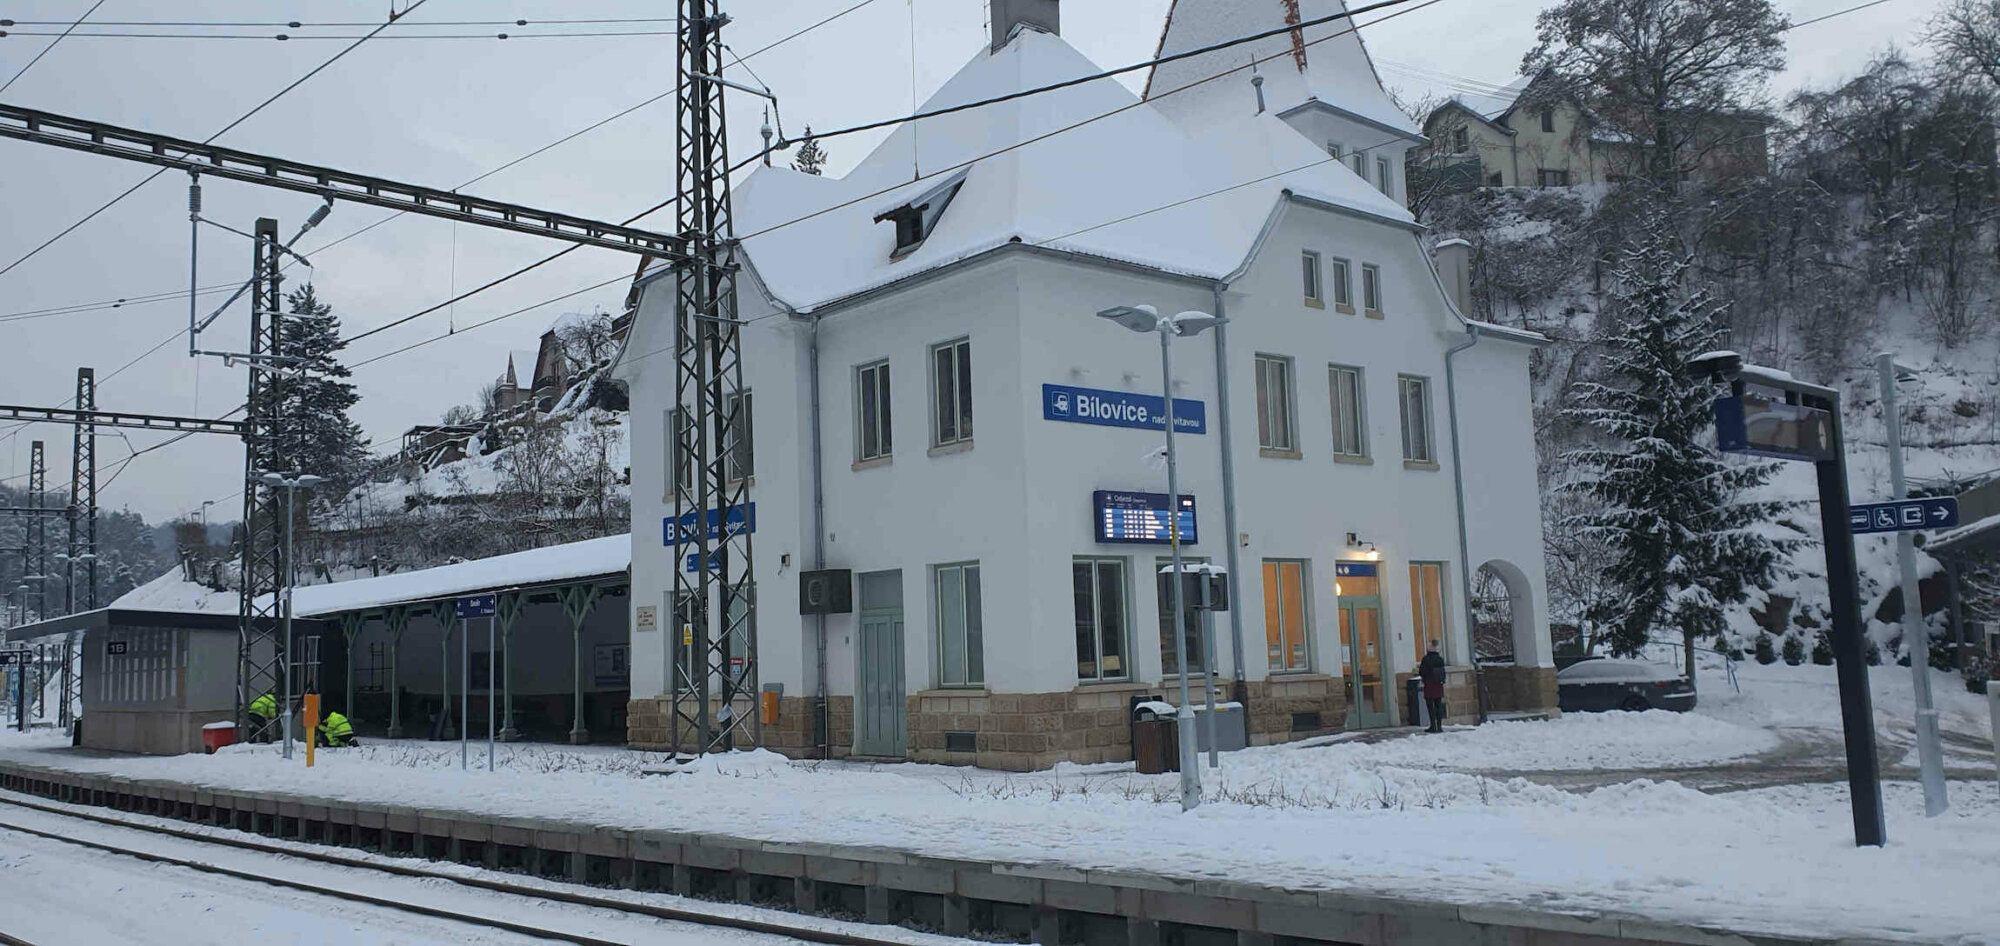 Bílovice nad Svitavou, vlaková zastávka, autor Pavel Boucník, převzato z Vlakem jednoduše